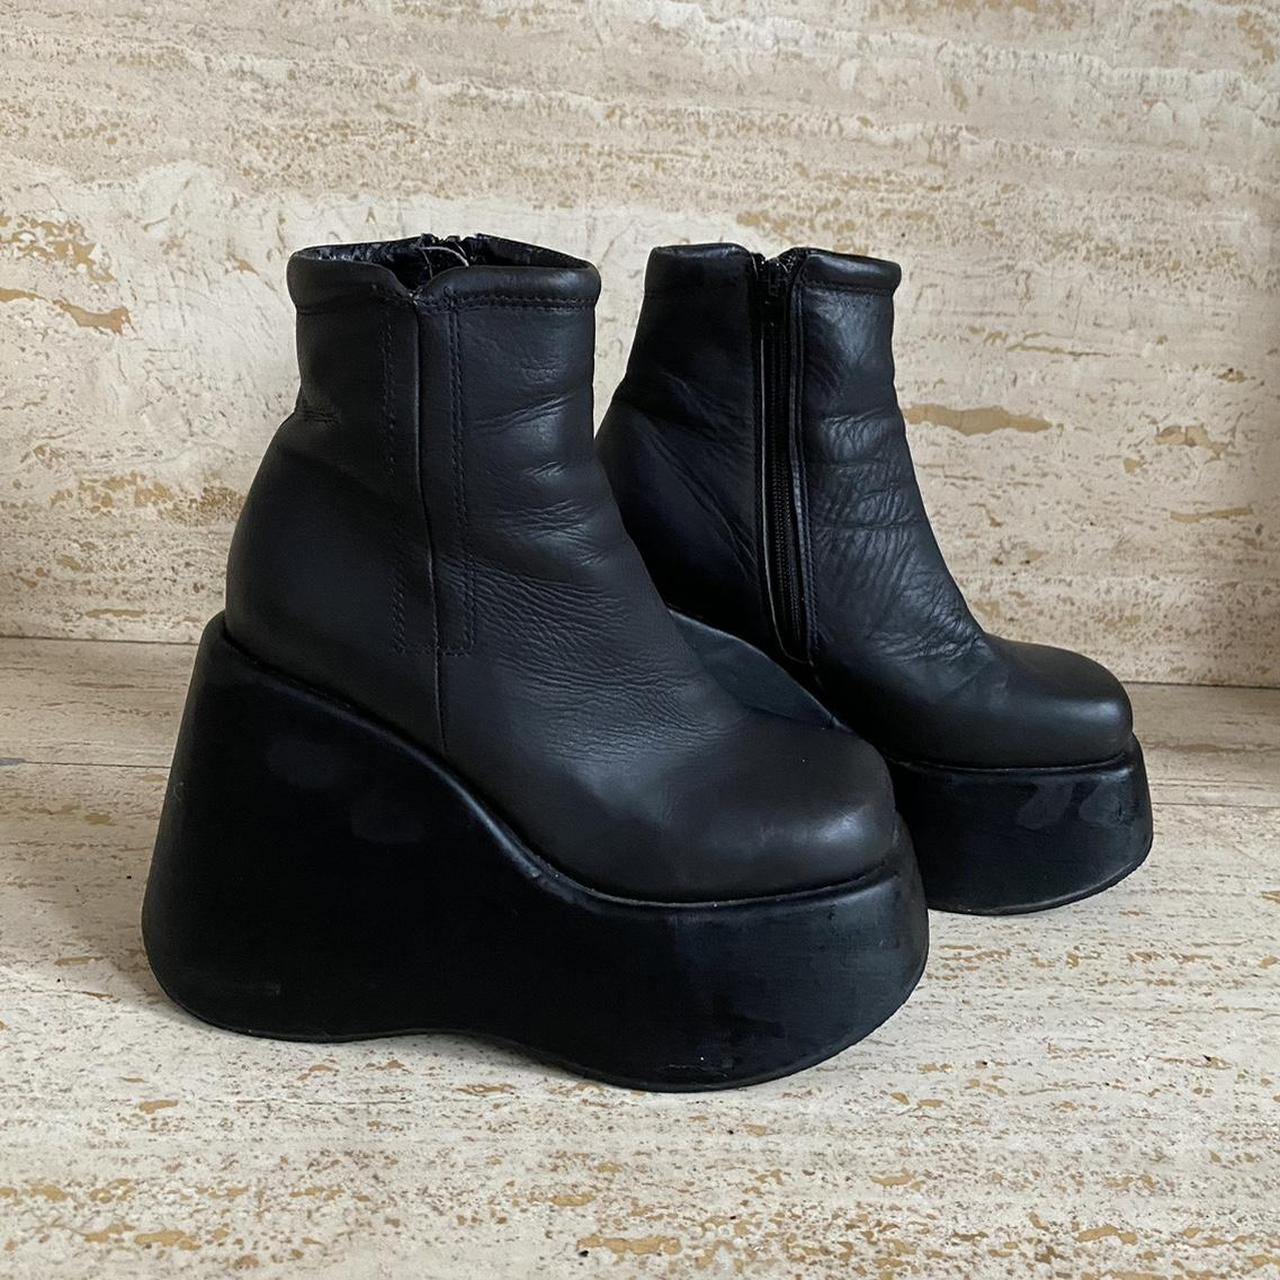 UNIF black leather wedge platform ankle boots.... - Depop